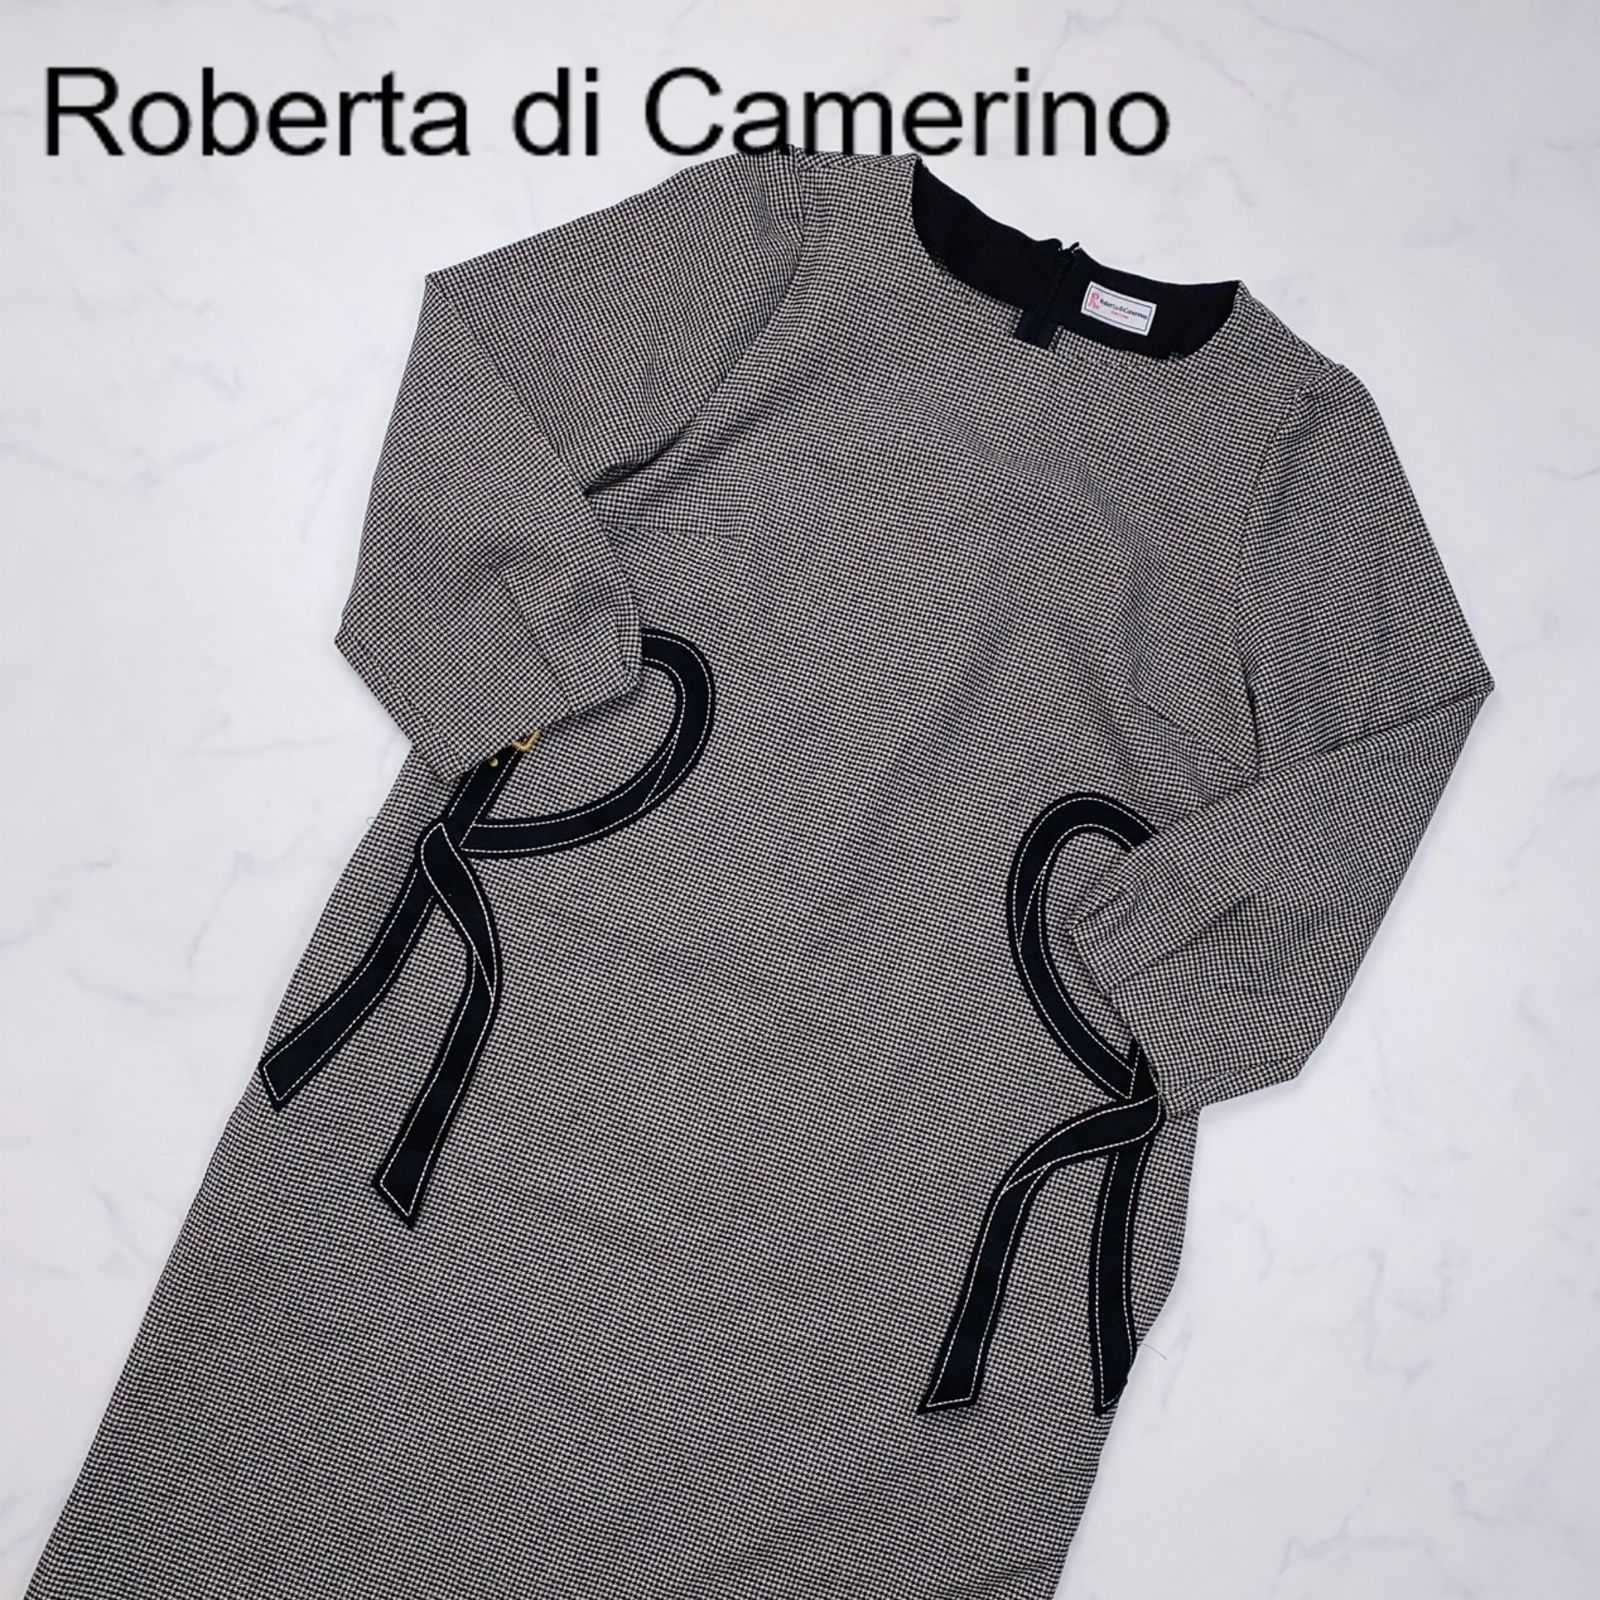 目立った傷汚れなし】Roberta di Camerino ロベルタ ディ カメリーノ ...